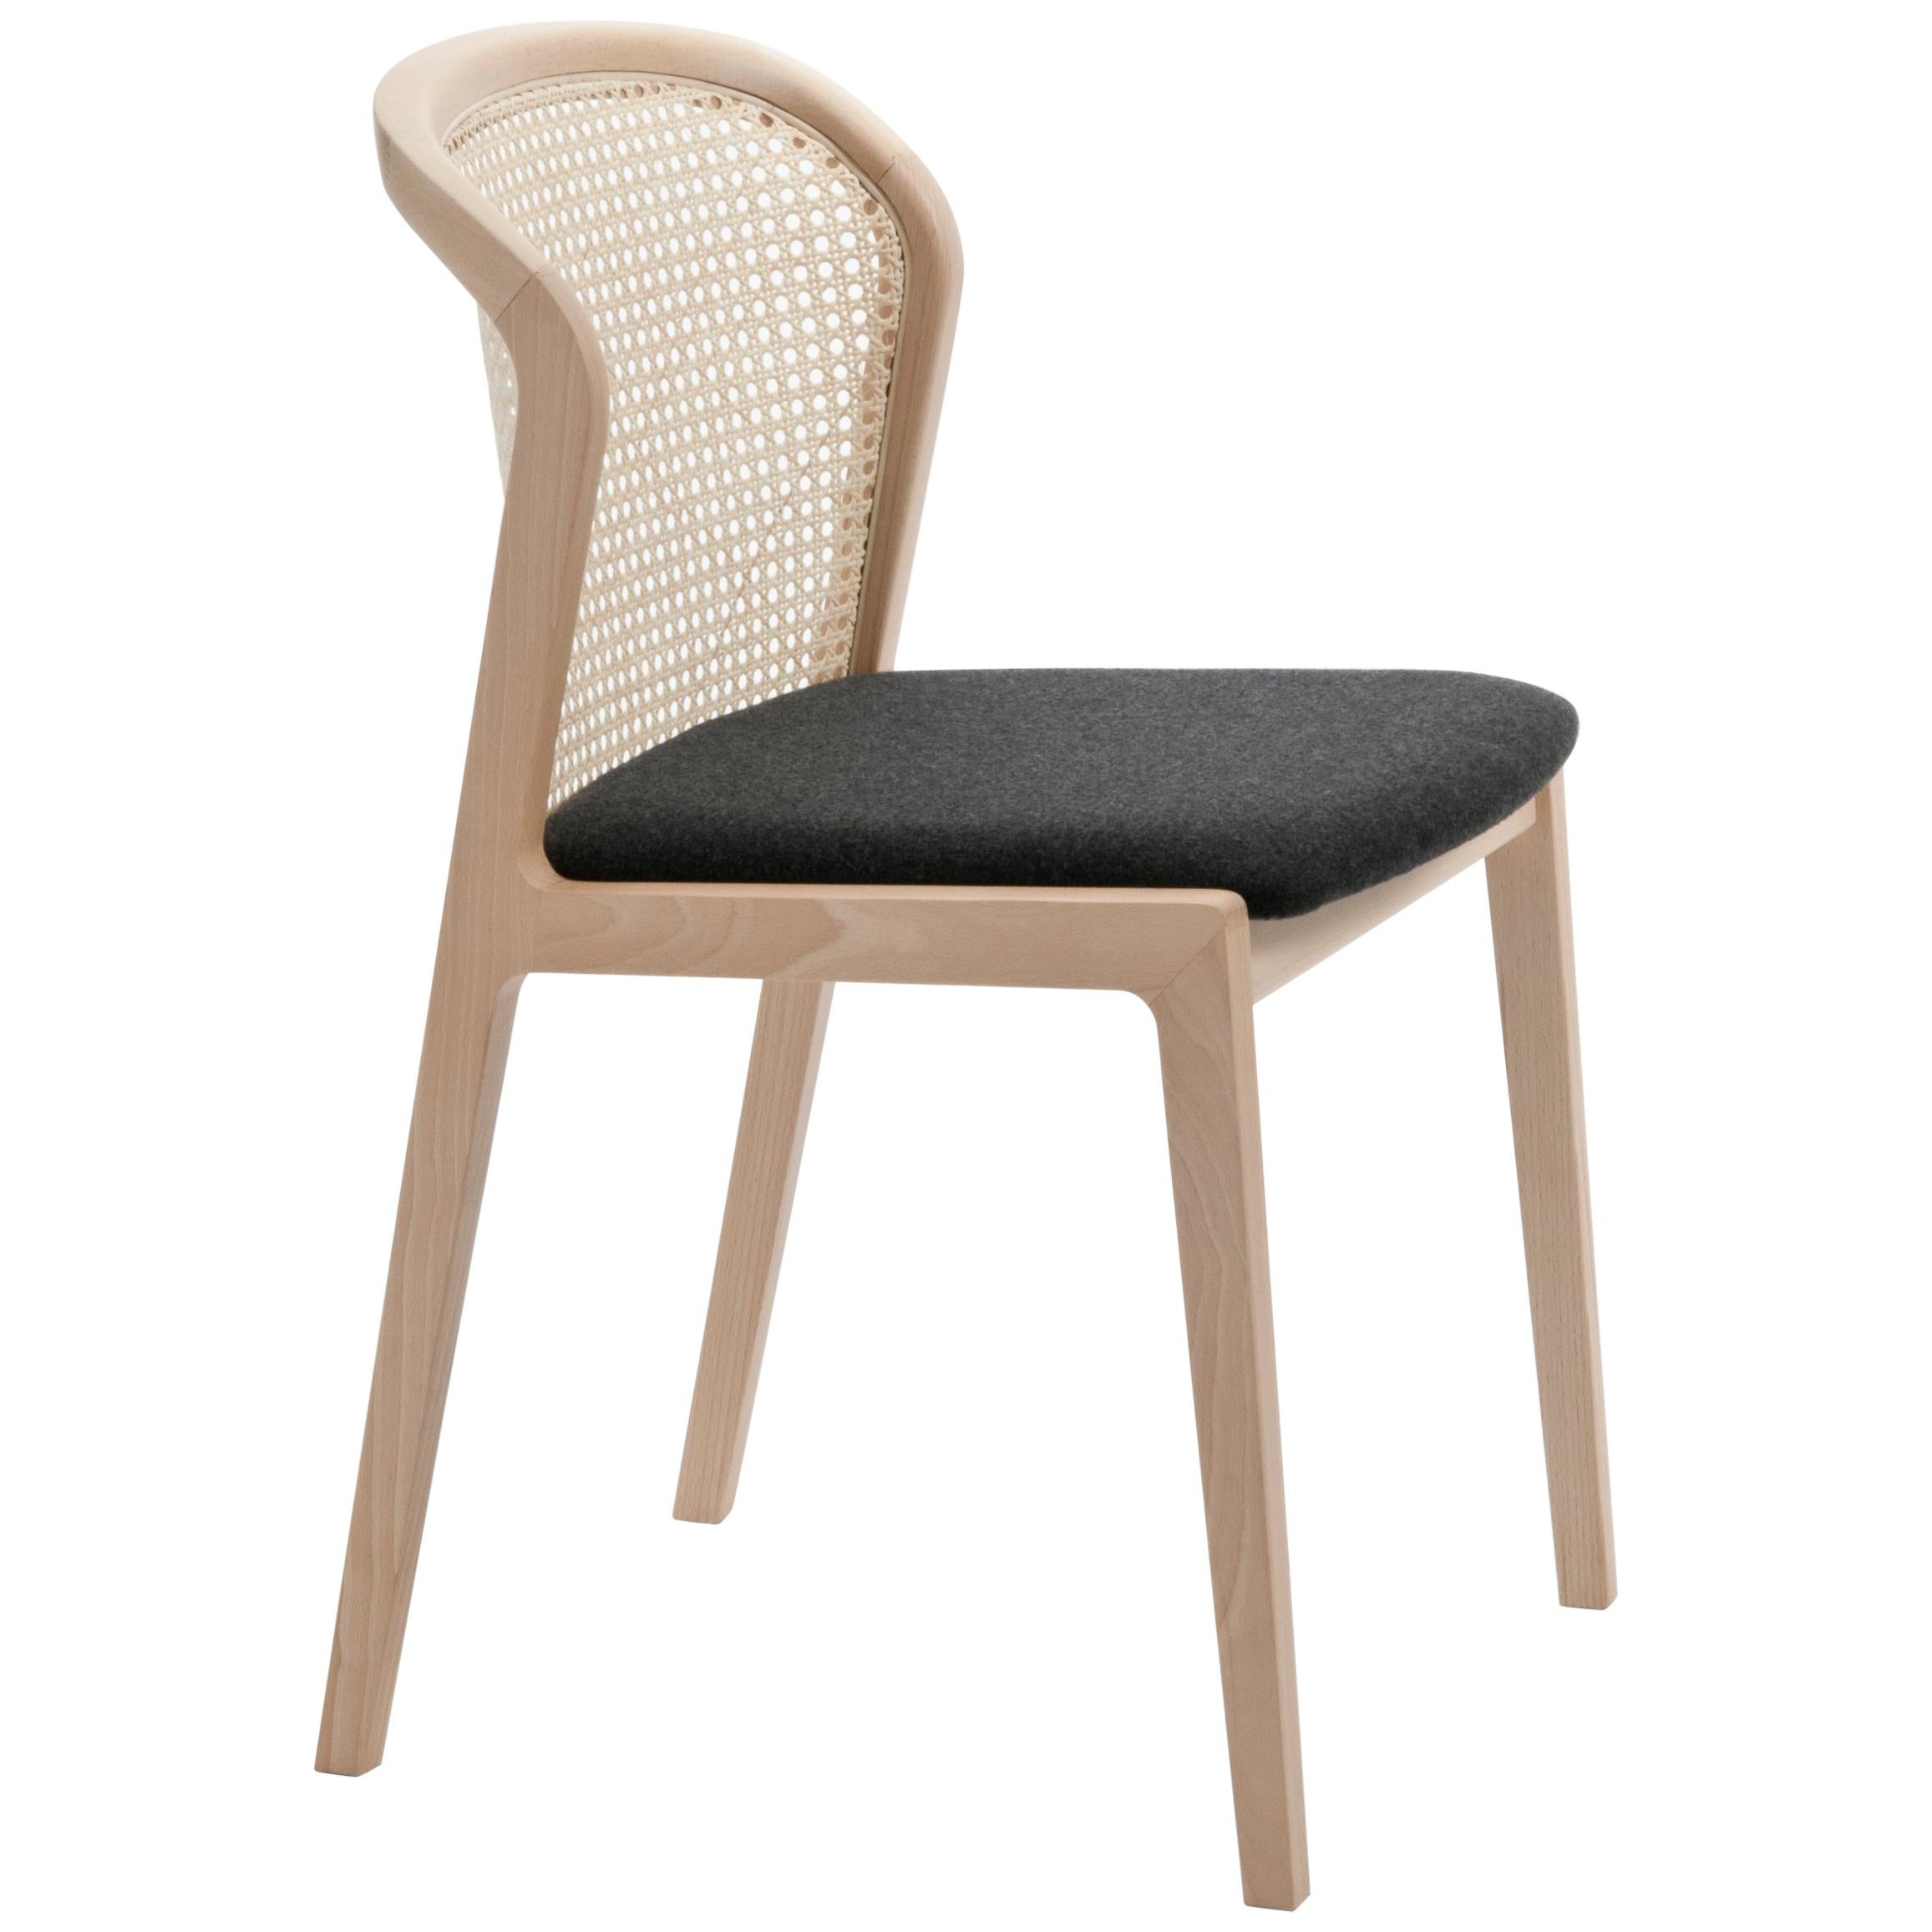 Chaise Vienna de Col, design moderne en bois et paille, assise tapissée noire